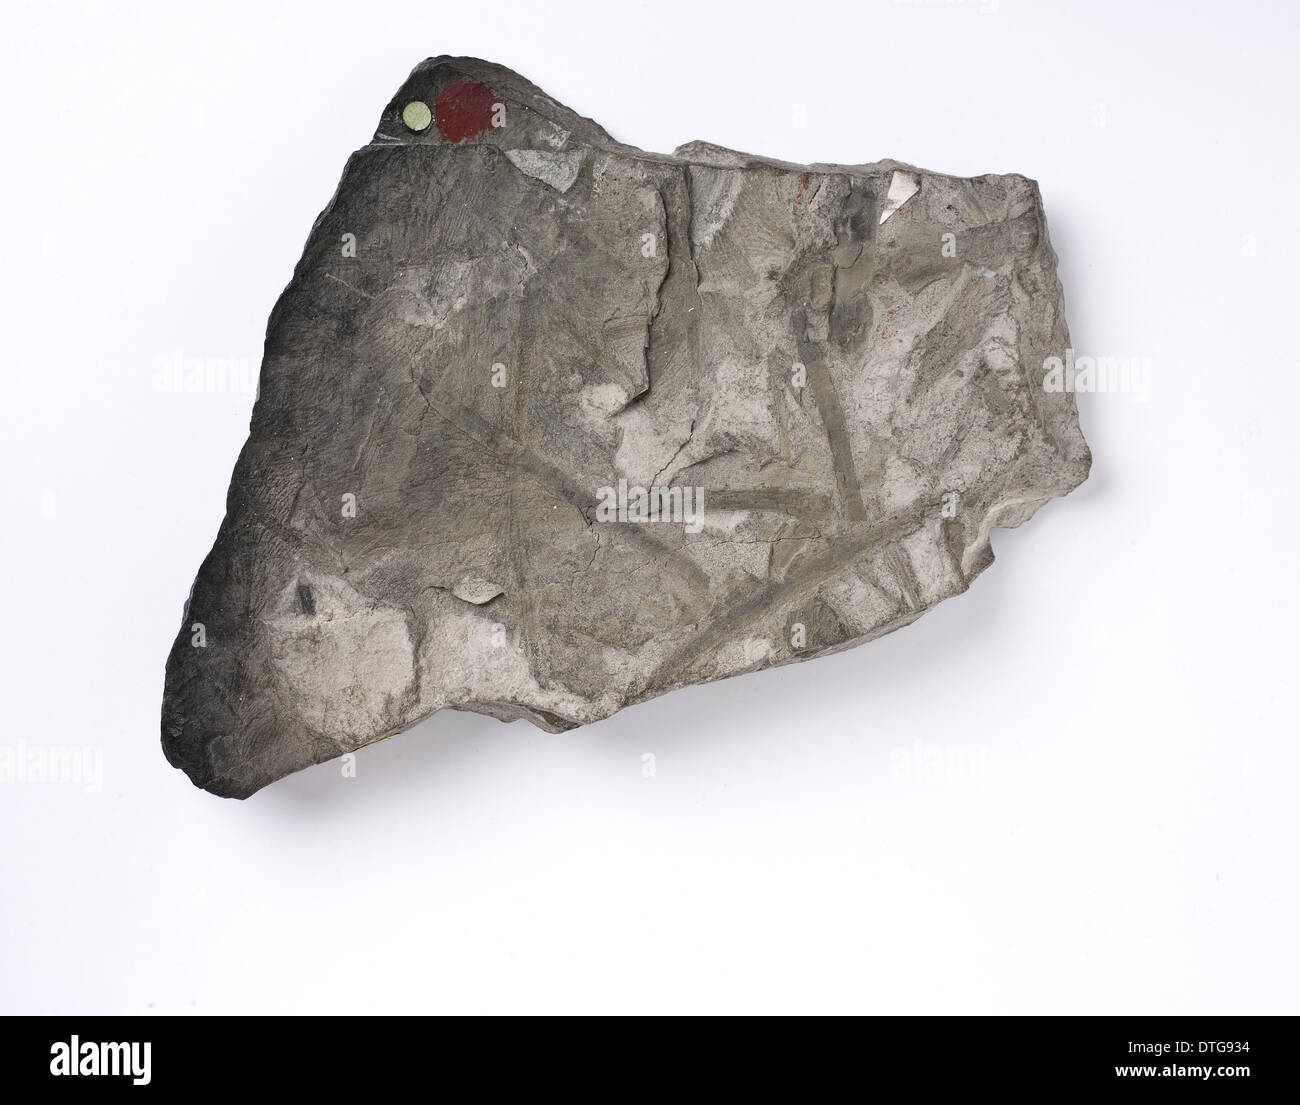 Glossopteris Indica, Antarktis fossilen Blatt Stockfoto